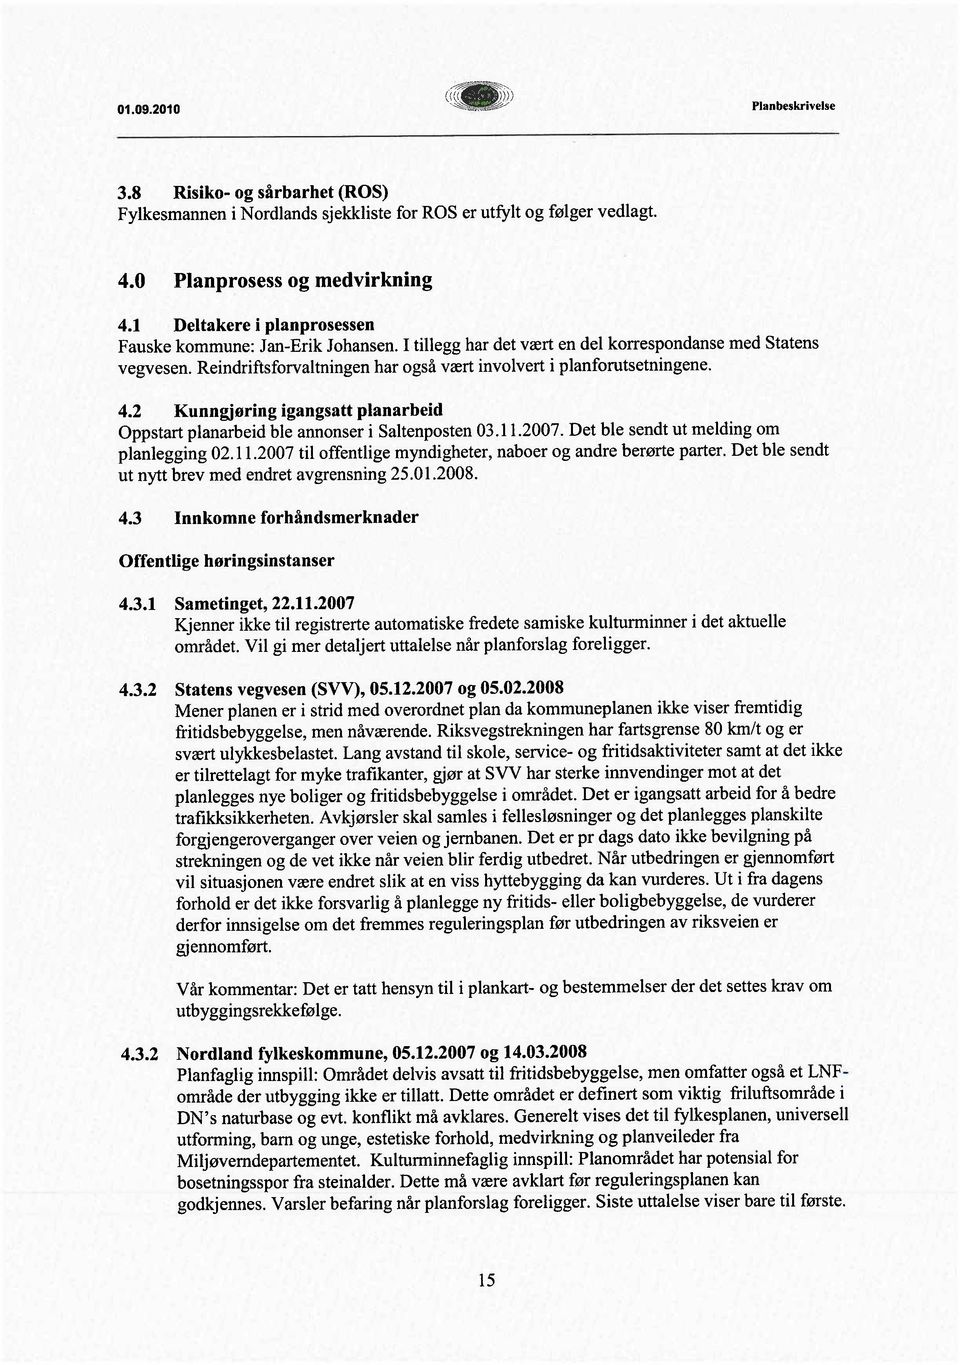 4.2 Kunngjøring igangsatt planarbeid Oppstart planarbeid ble annonser i Saltenposten 03.1 1.2007. Det ble sendt ut melding om planlegging 02.11.